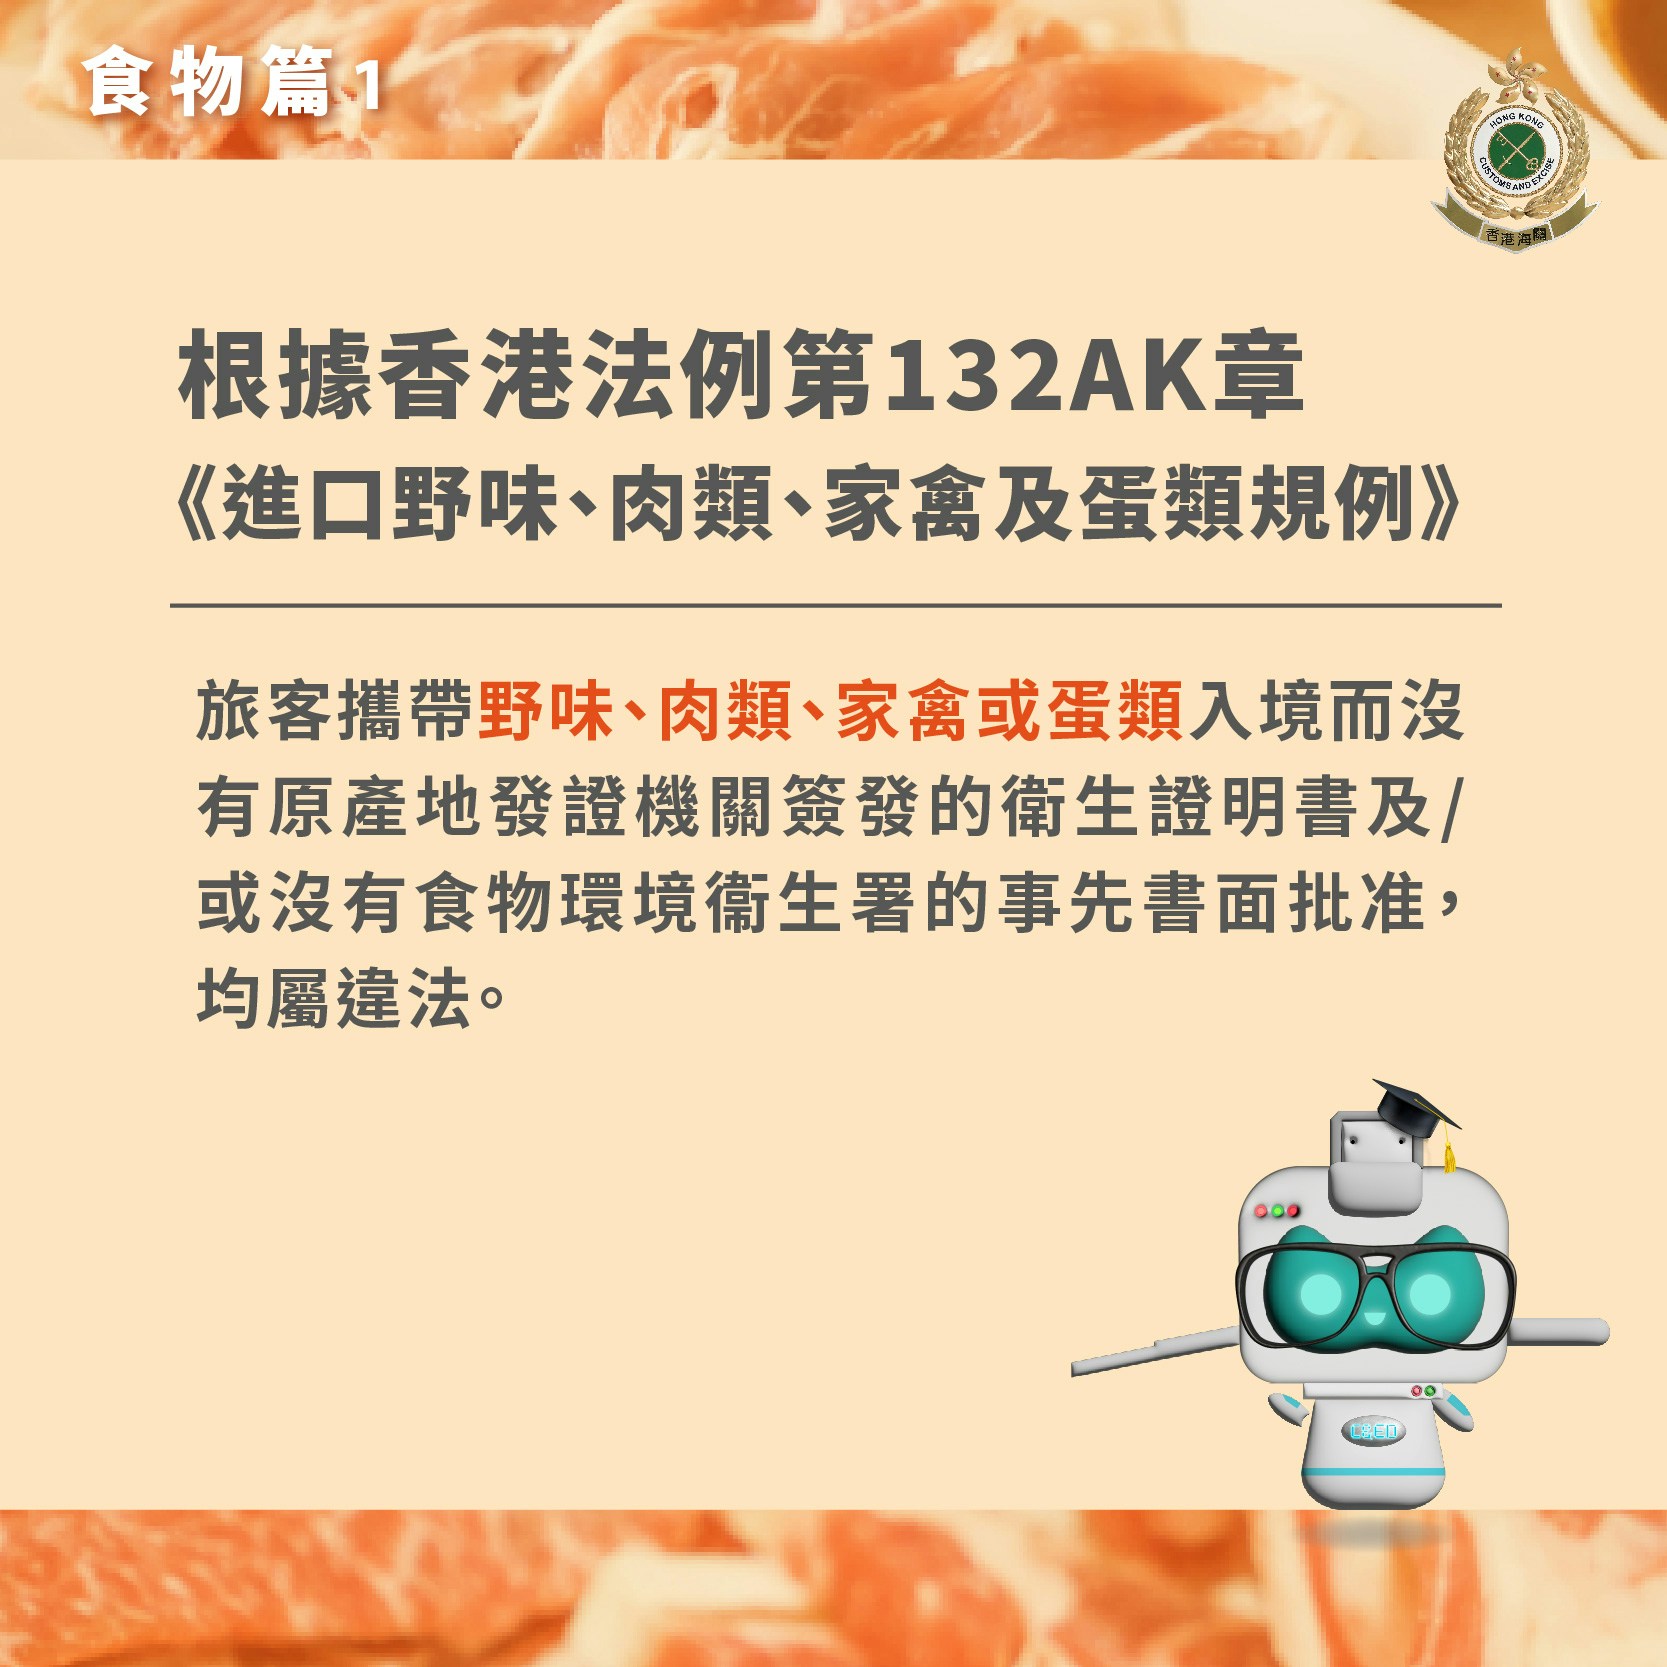 香港海关制作「跨境消费咪乱带」食物篇提示。(香港海关Facebook专页图片）